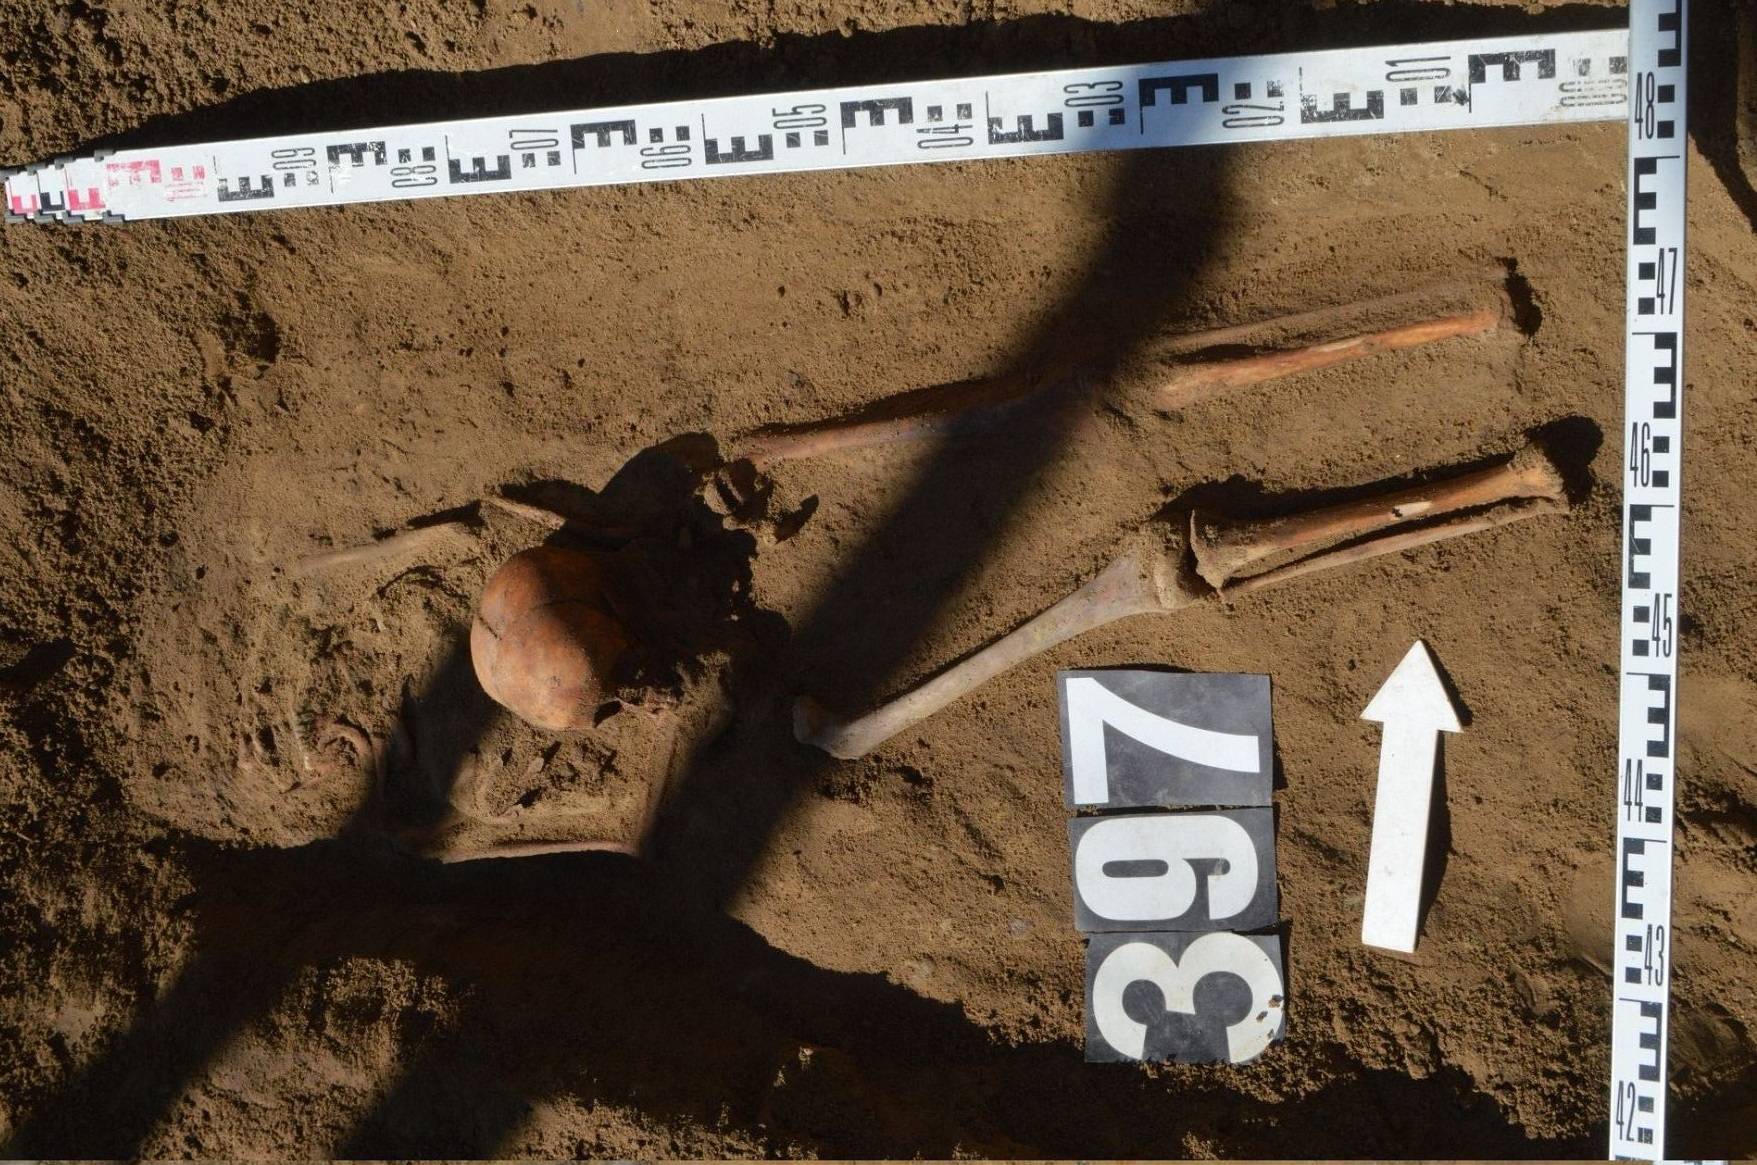 Opgegraven resten van een schedel tussen twee benen geplaatst